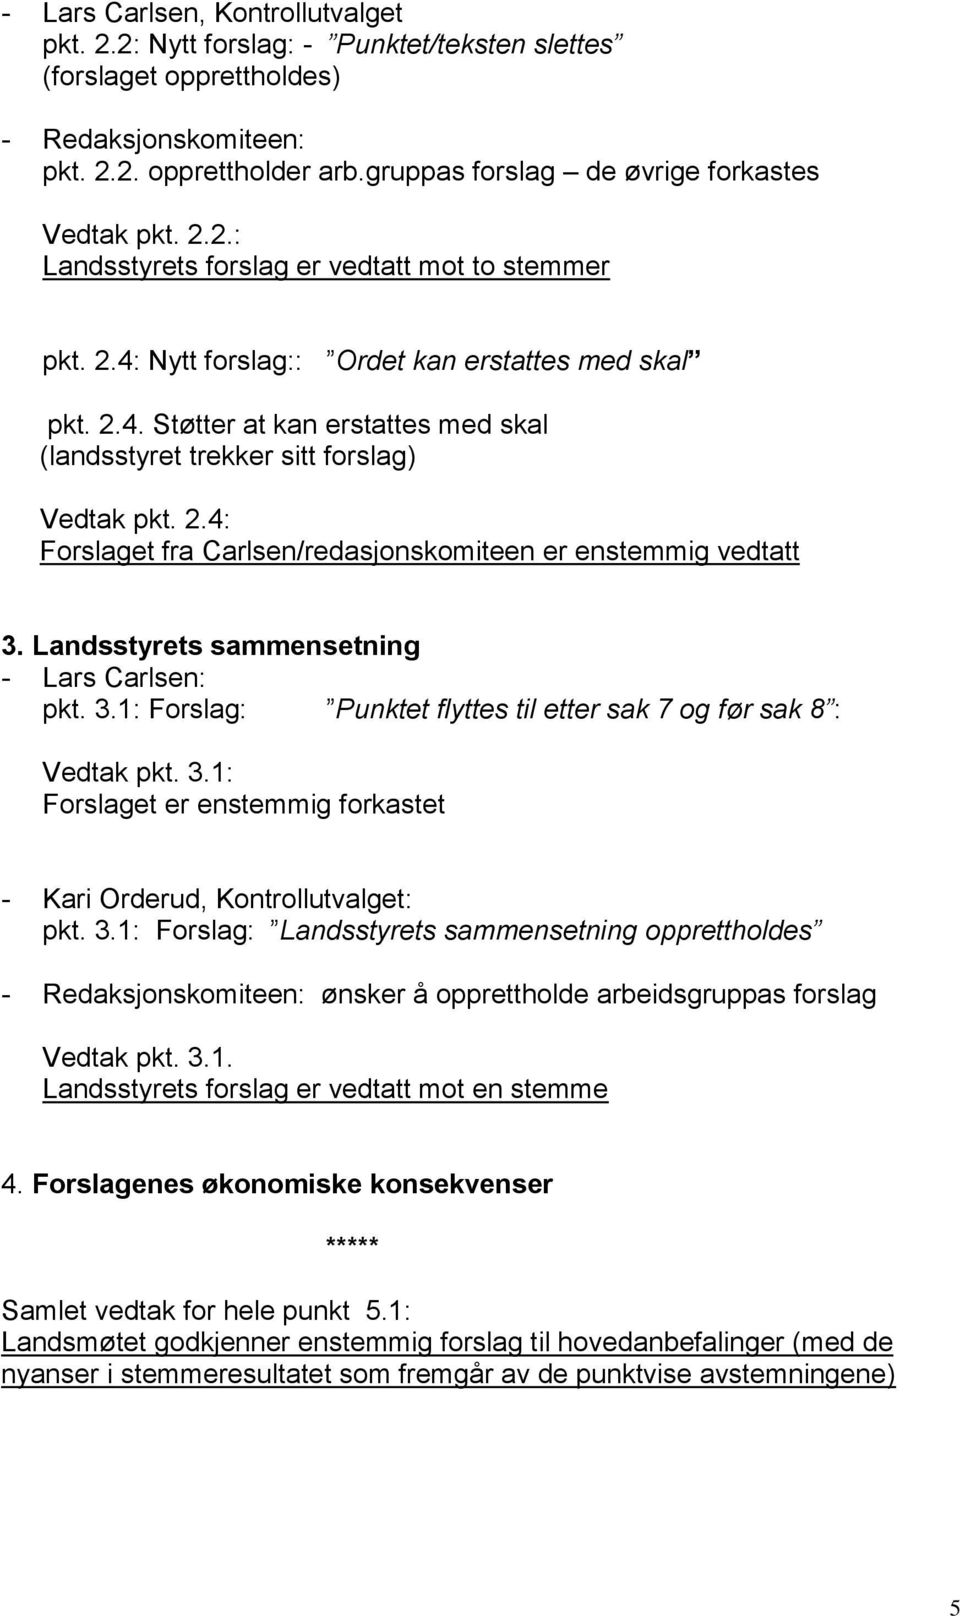 2.4: Forslaget fra Carlsen/redasjonskomiteen er enstemmig vedtatt 3. Landsstyrets sammensetning - Lars Carlsen: pkt. 3.1: Forslag: Punktet flyttes til etter sak 7 og før sak 8 : Vedtak pkt. 3.1: Forslaget er enstemmig forkastet - Kari Orderud, Kontrollutvalget: pkt.